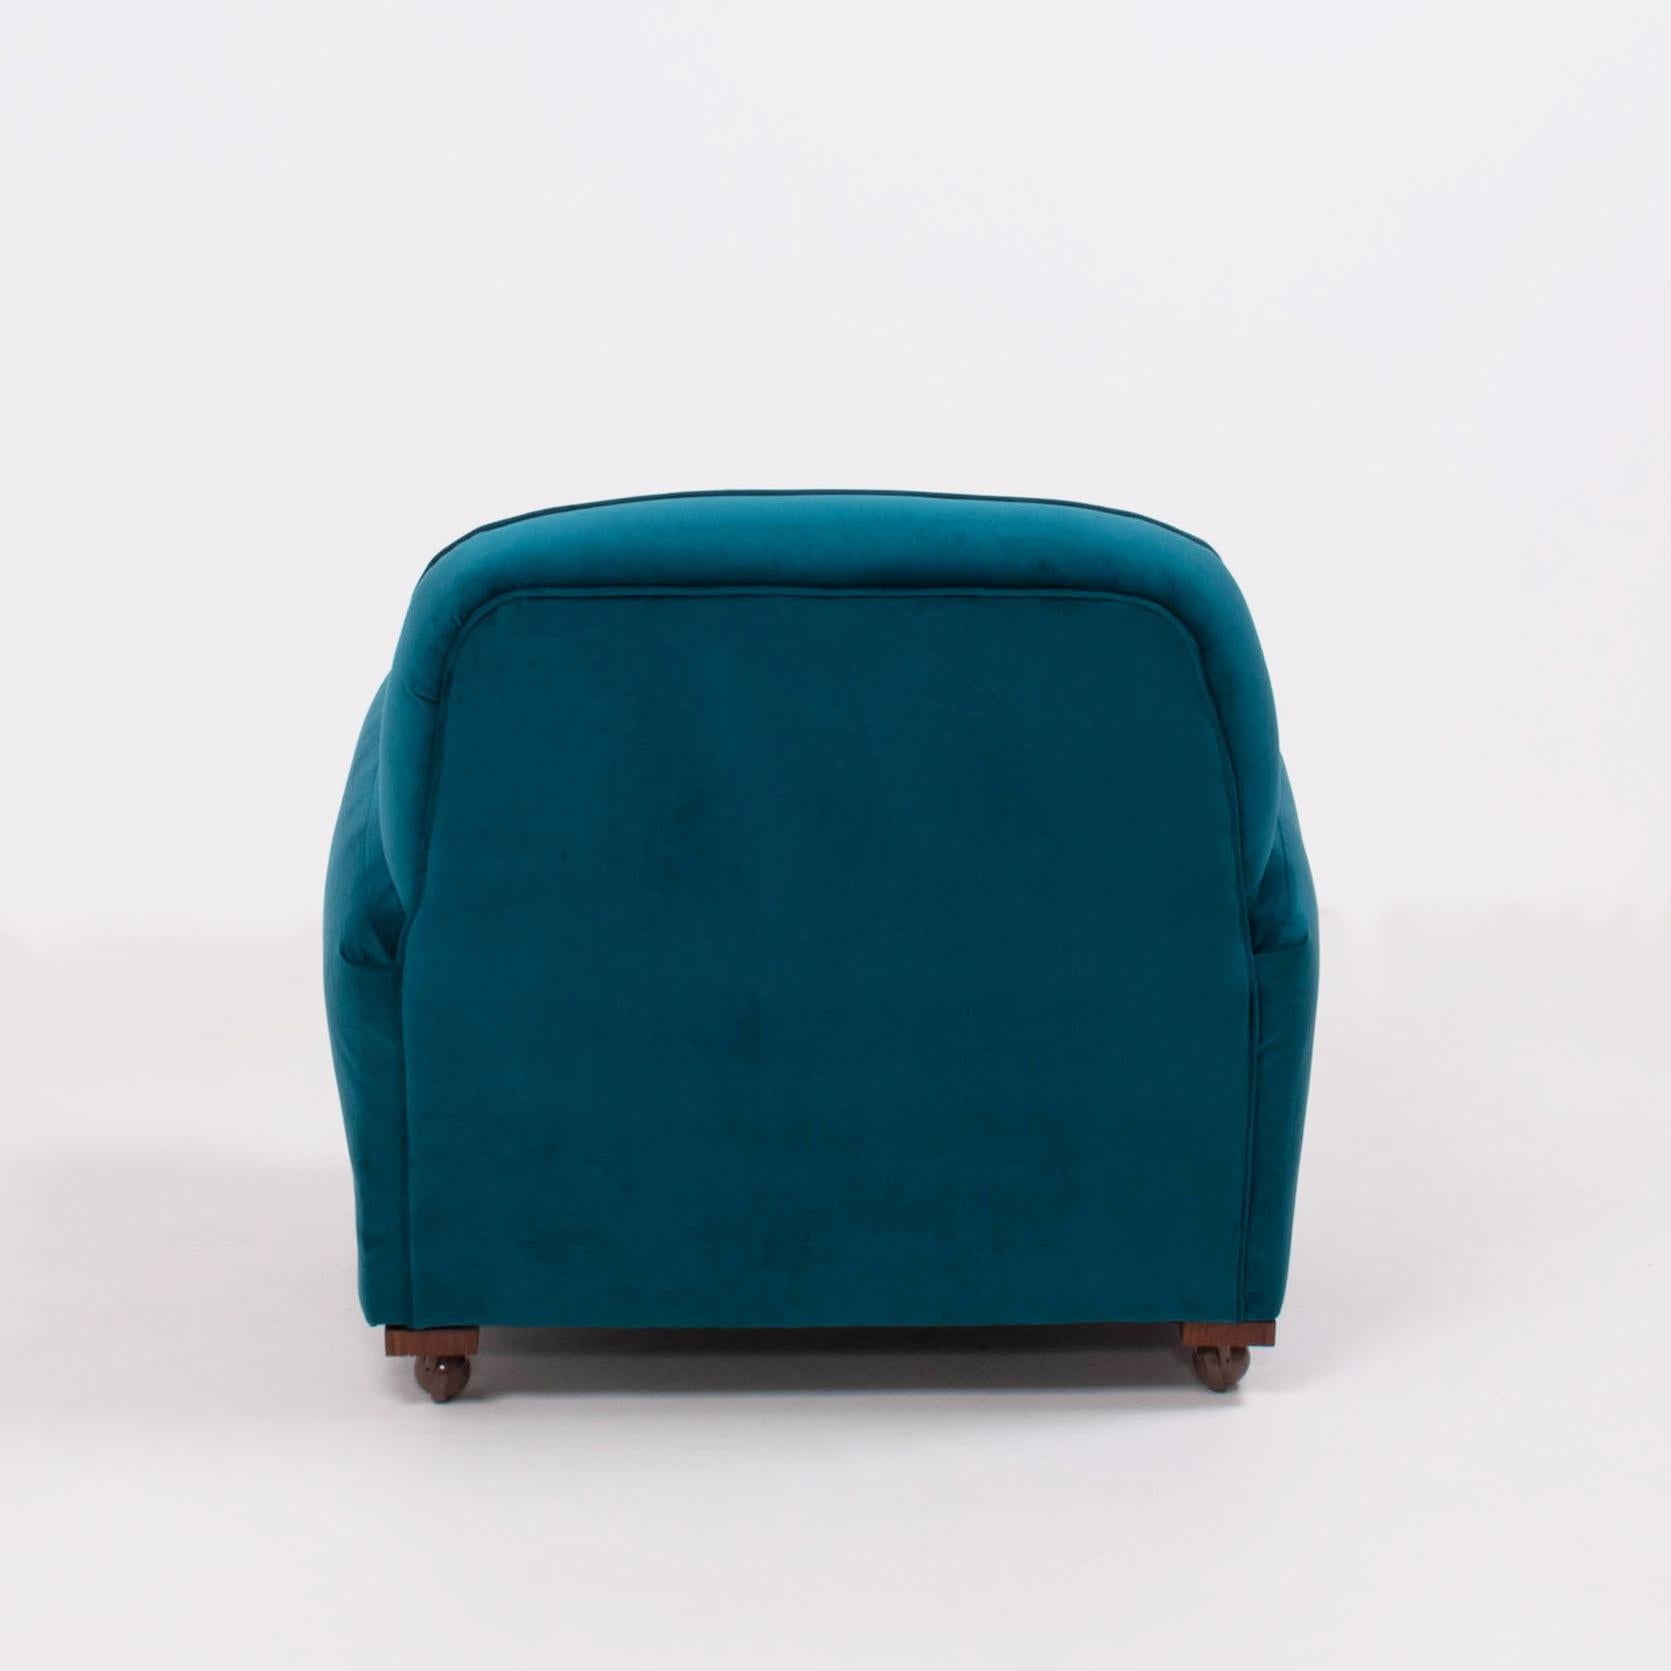 Fabric 1930s Art Deco Curved Blue Teal Velvet Armchair